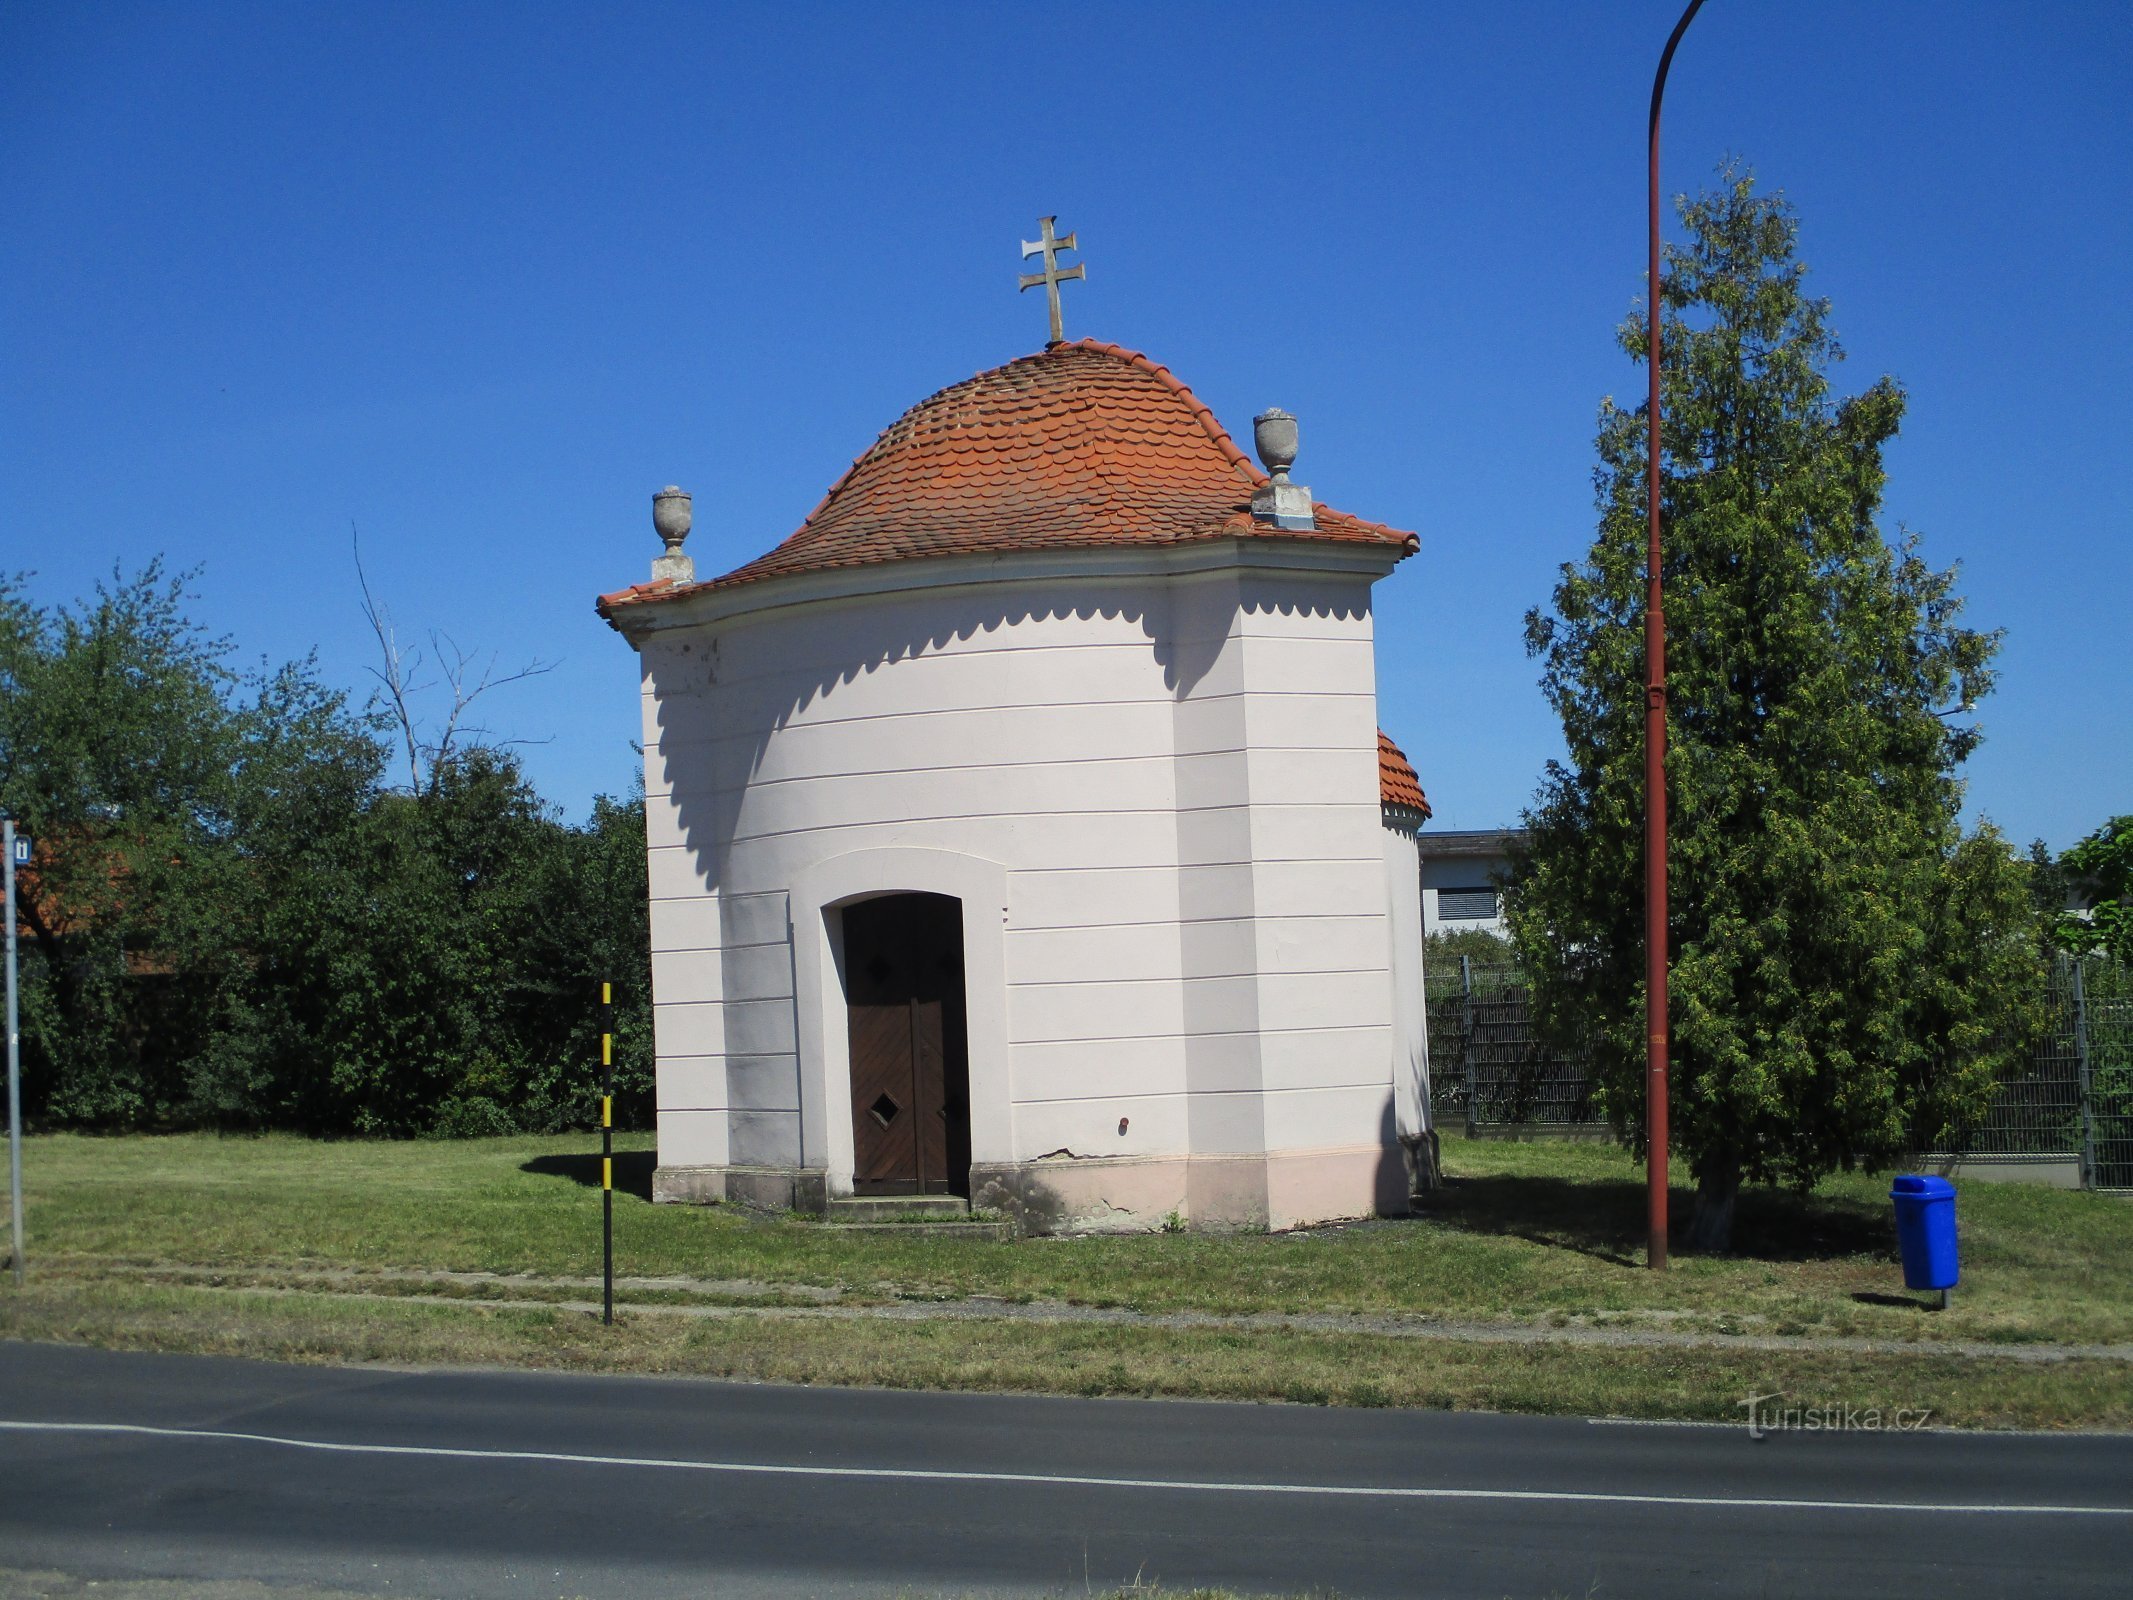 Kaple sv. Rozálie (Roudnice nad Labem, 31.7.2020)